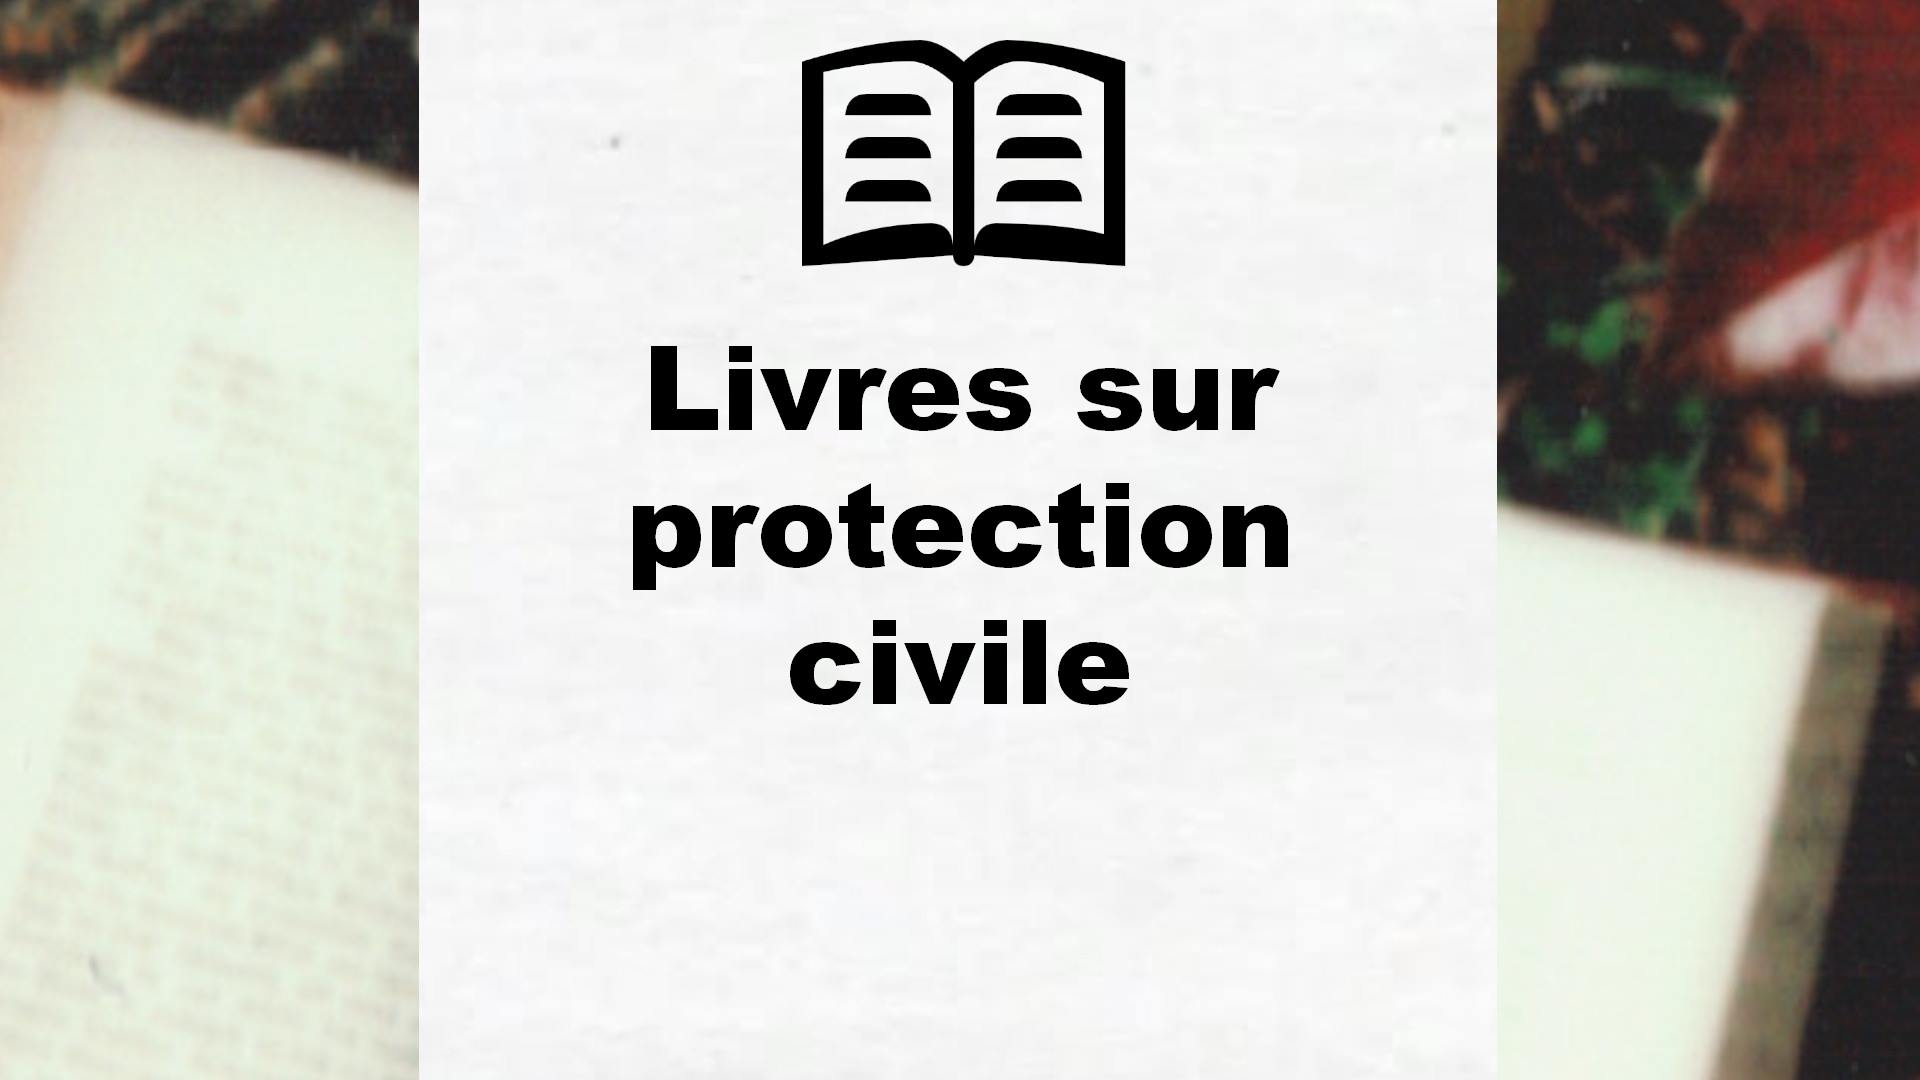 Livres sur protection civile